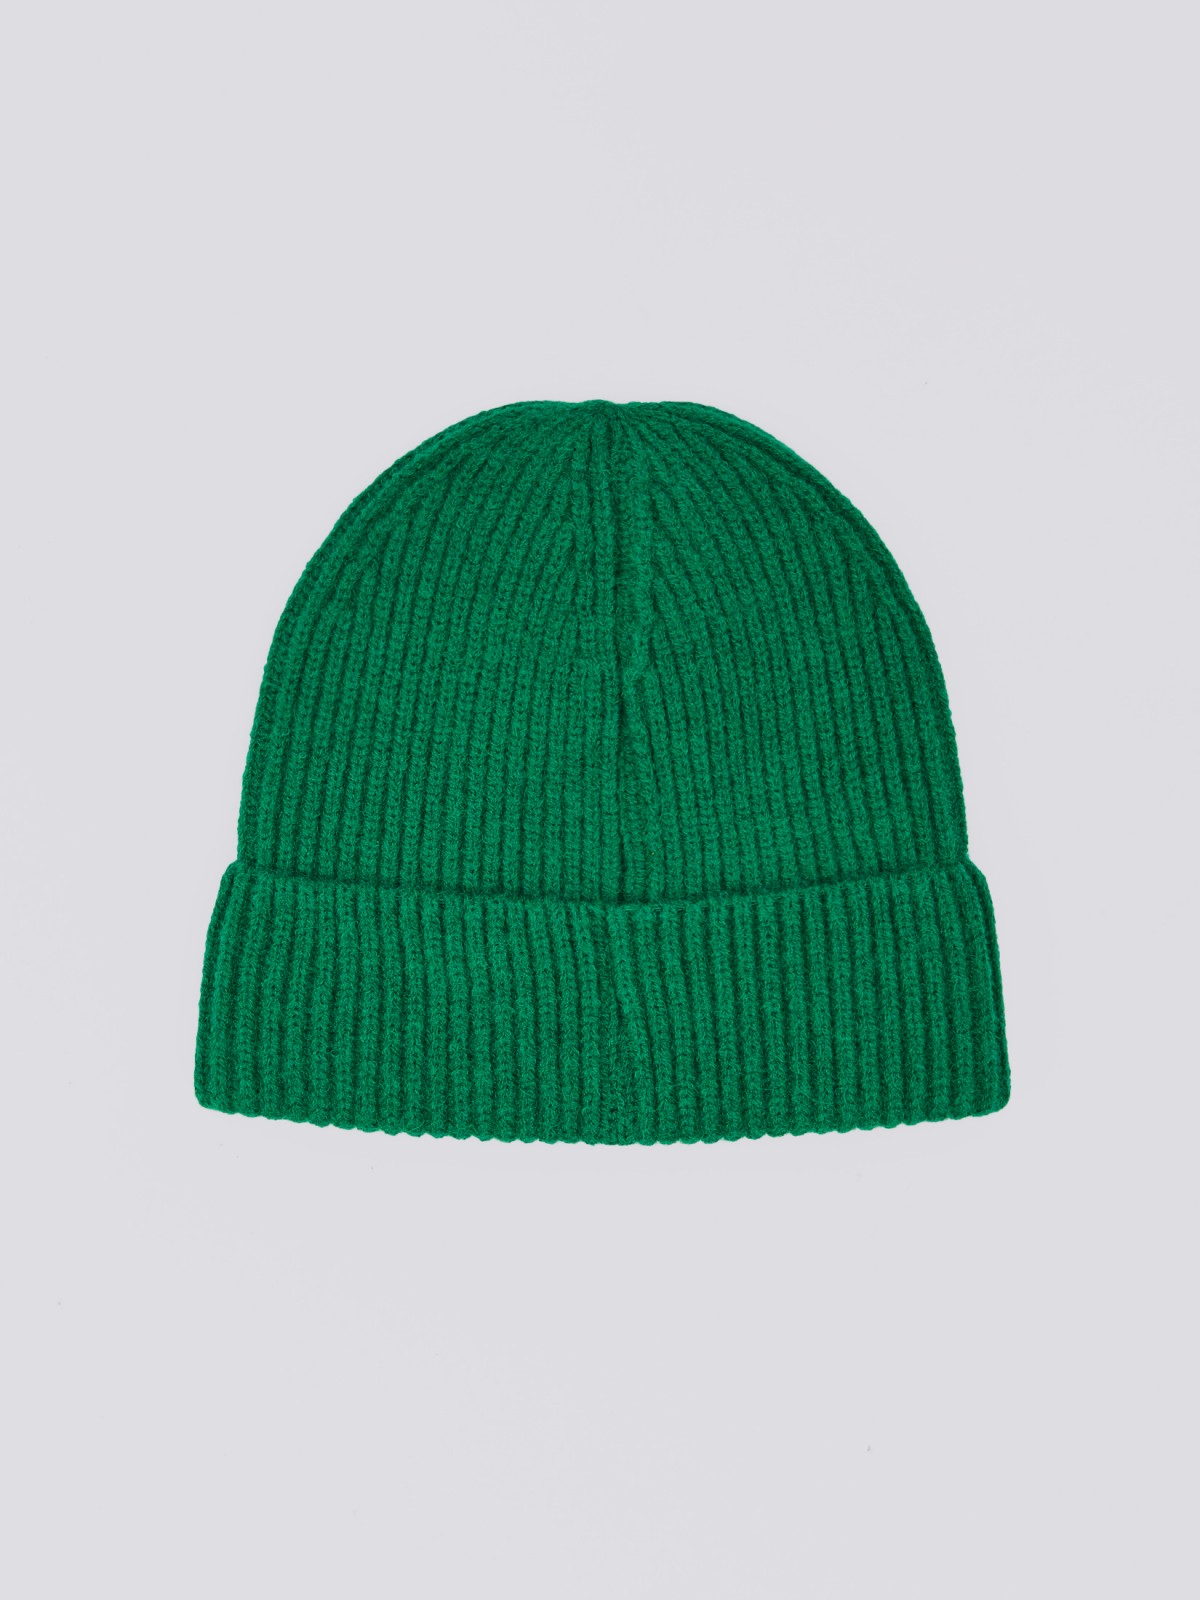 Вязаная шапка-бини с отворотом zolla 02411924G075, цвет зеленый, размер 54-58 - фото 3